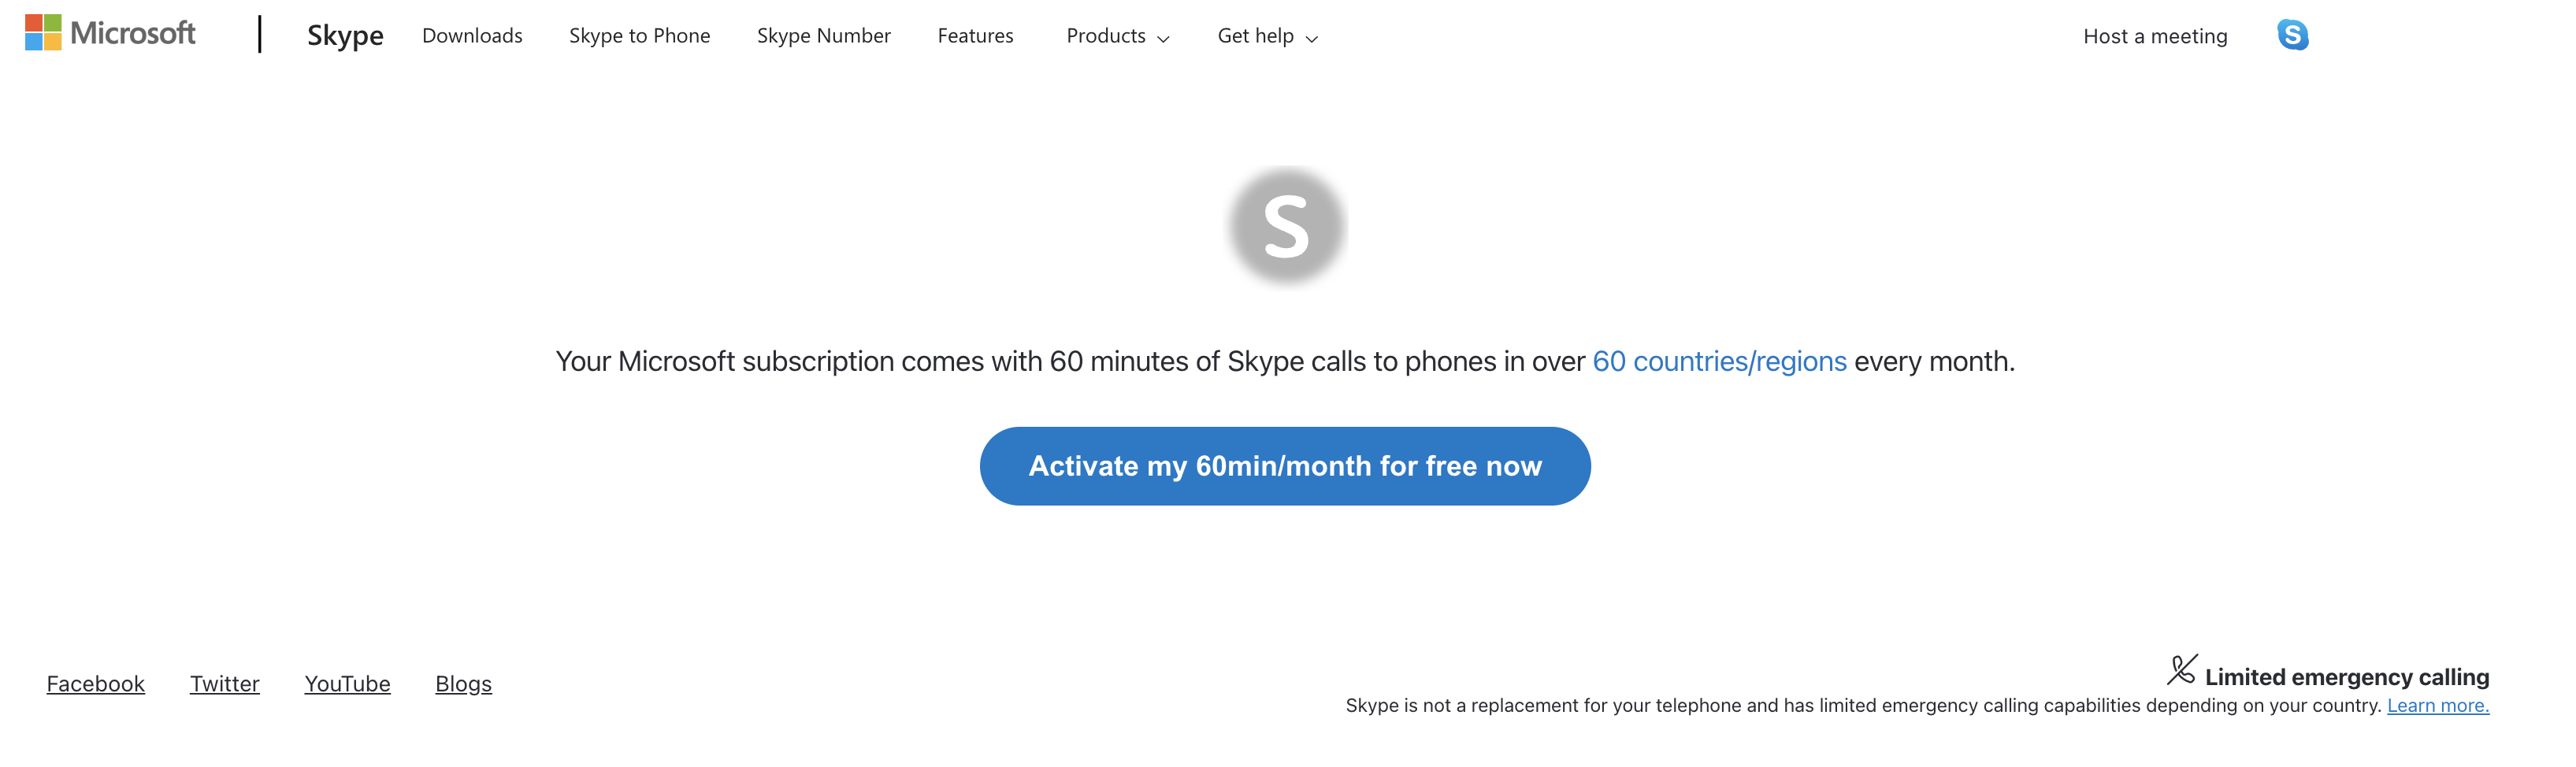 使用 Skype 免費啟用 60 分鐘的網頁